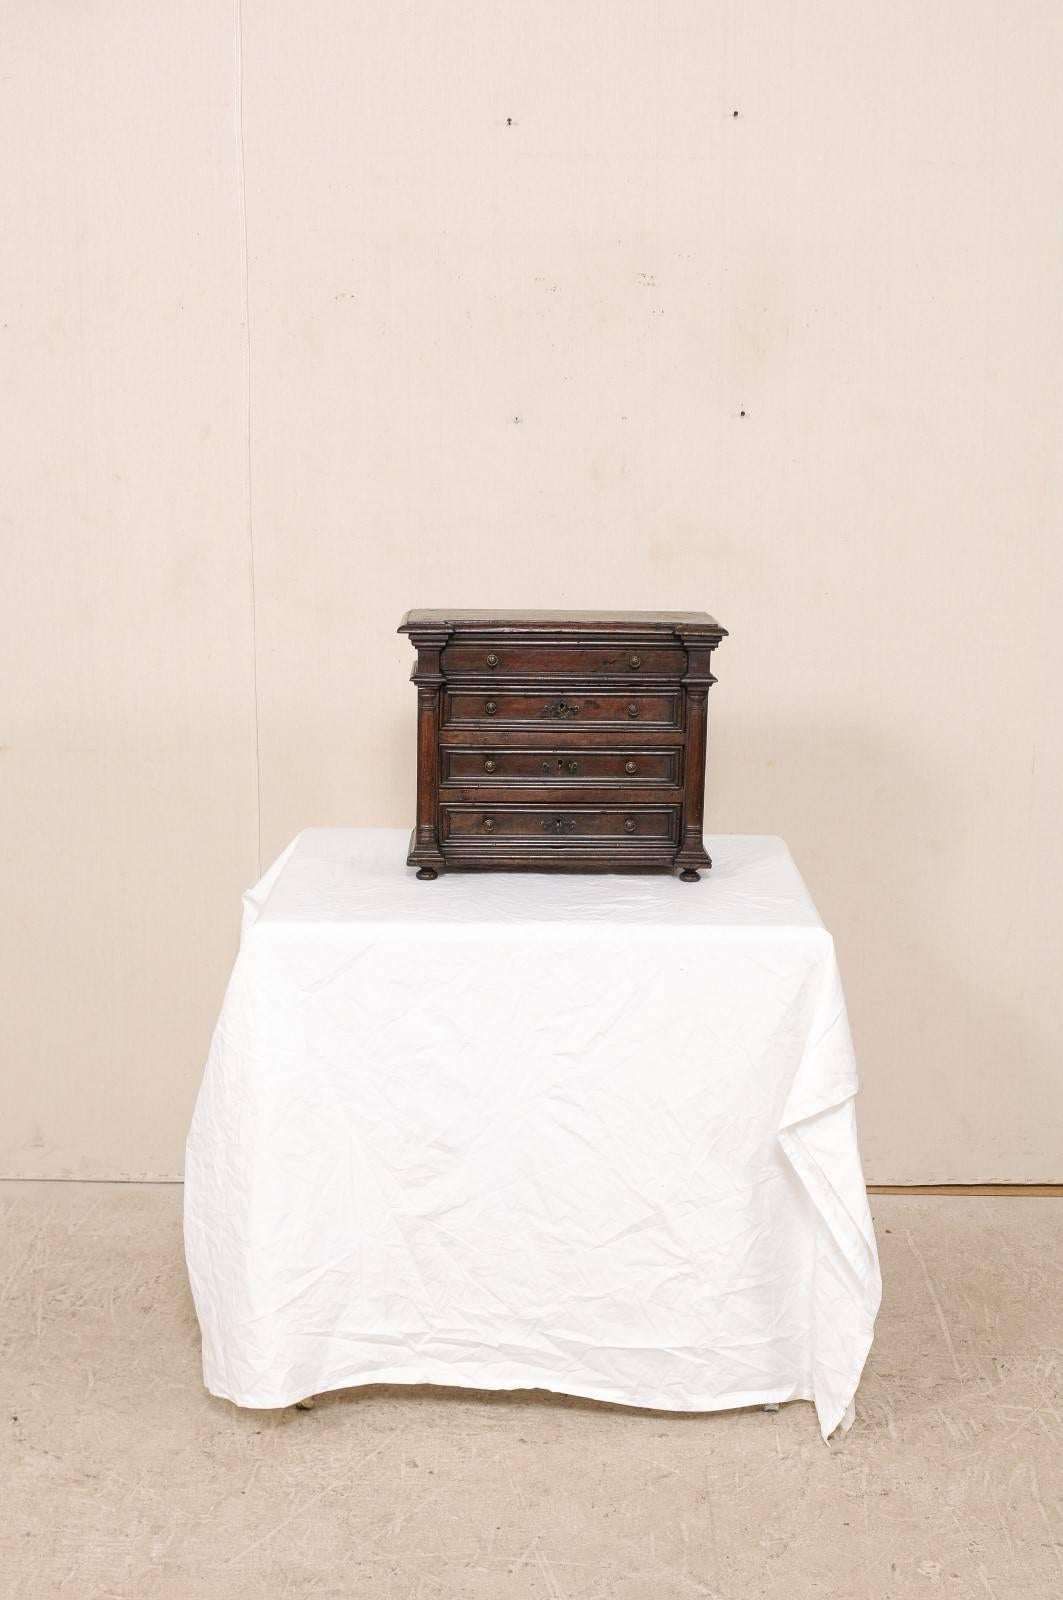 Eine kleine italienische Nussbaumtruhe aus dem frühen 18. Jahrhundert. Diese italienische Kommode mit vier Schubladen verfügt über geschnitzte Säulen, getäfelte Schubladen und Seiten und steht auf vier zierlichen Füßen. Diese Tischtruhe aus reichem